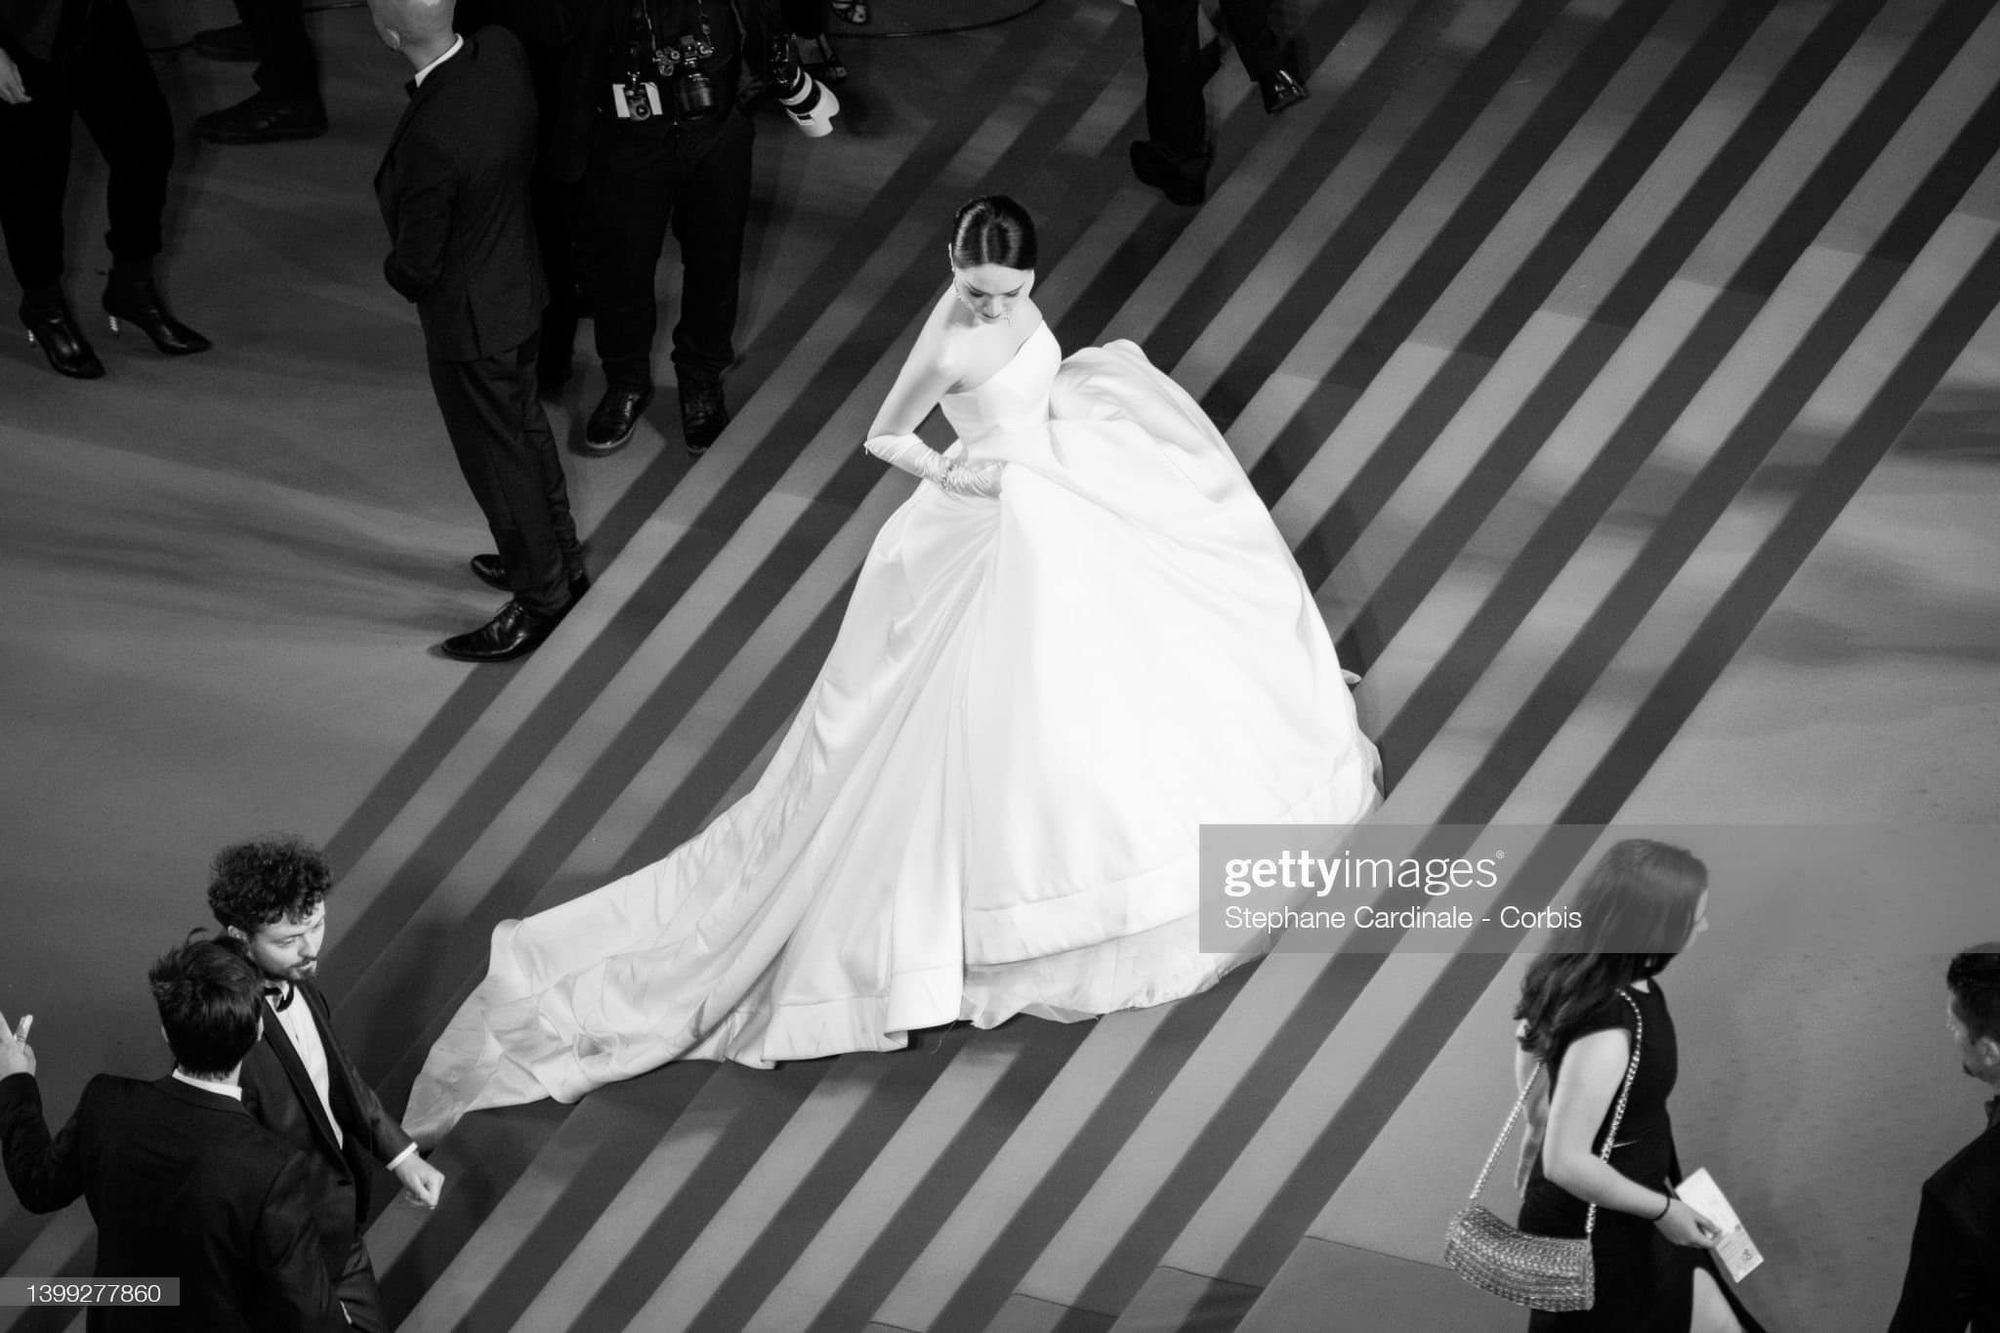 Hương Giang diện váy như cô dâu, bất ngờ xuất hiện trên thảm đỏ Cannes - Ảnh 5.